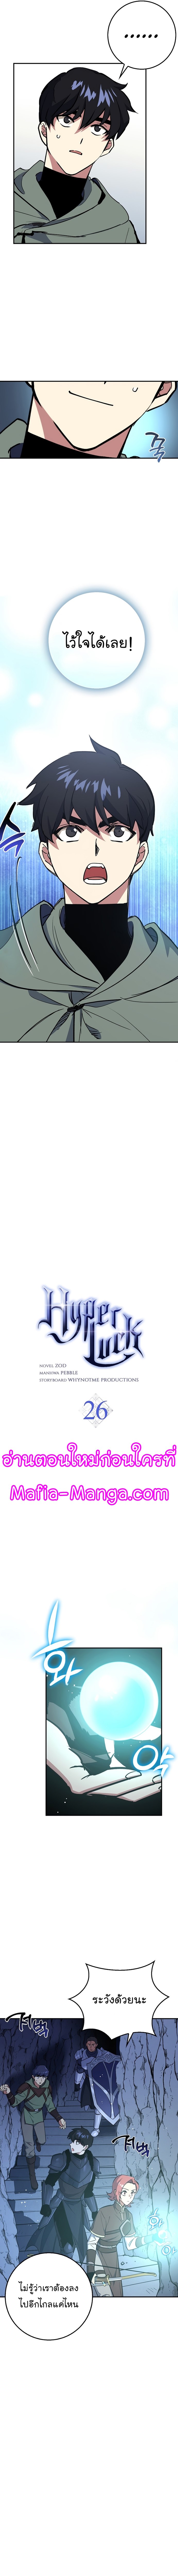 Hyper Luck 26 04